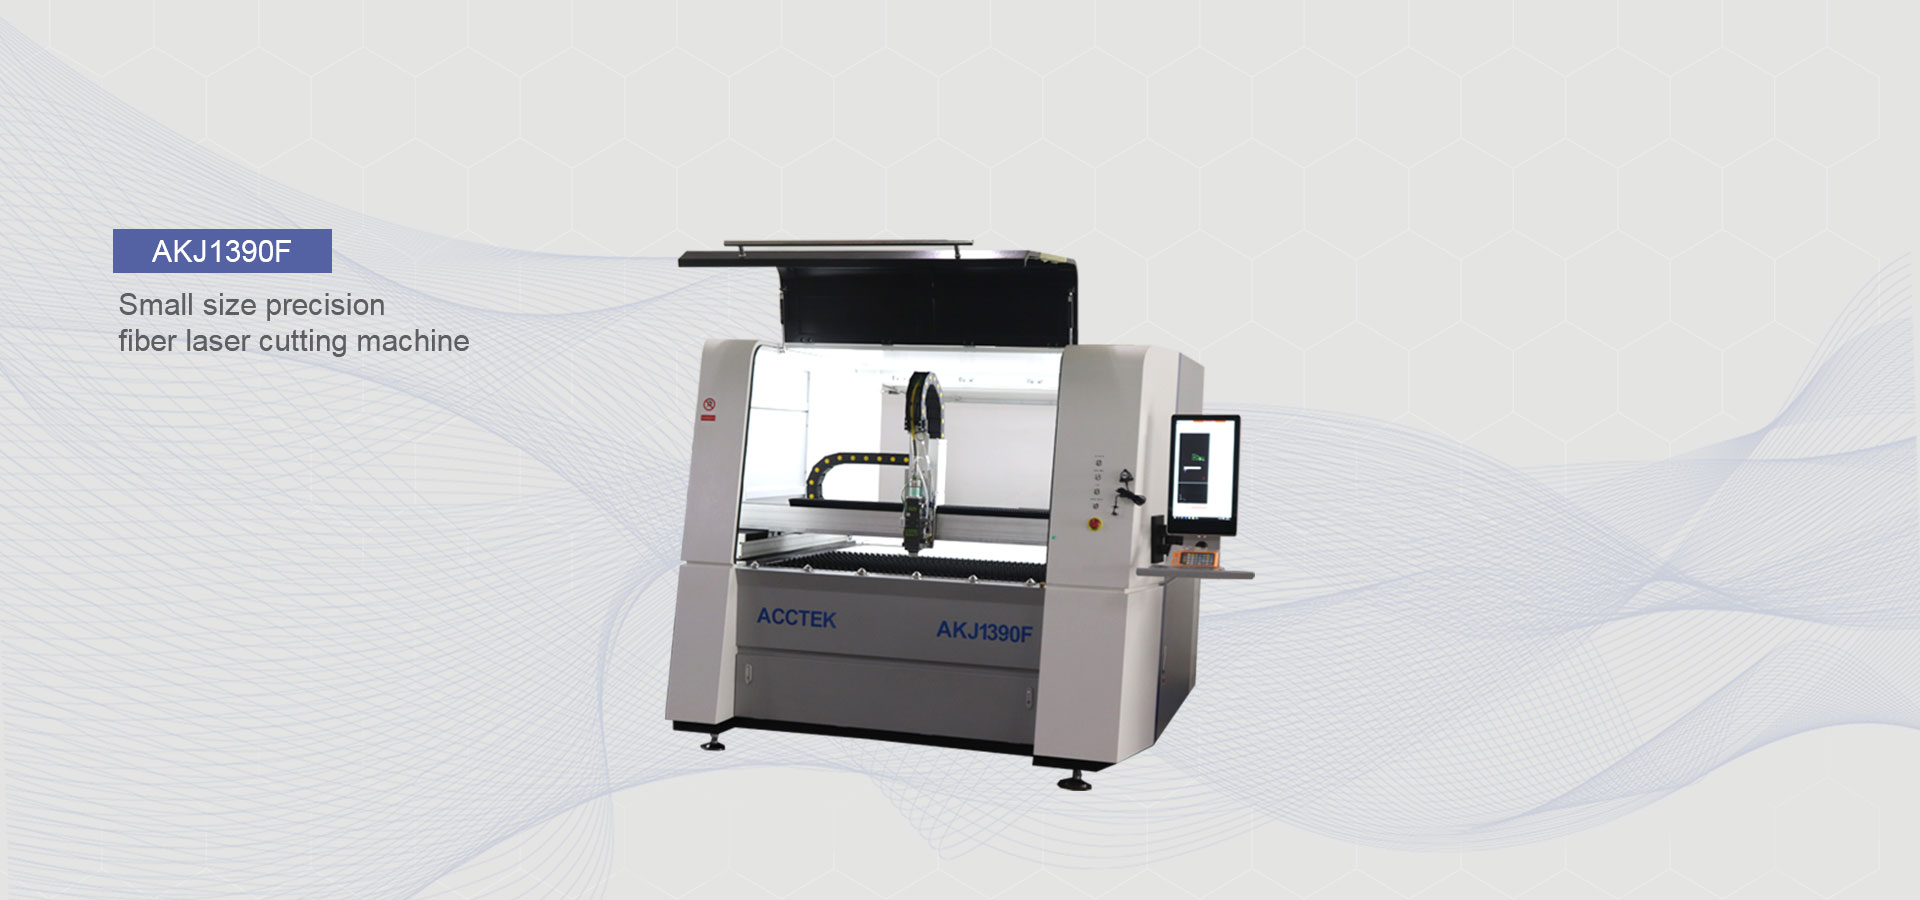 size precision fiber laser cutting machine